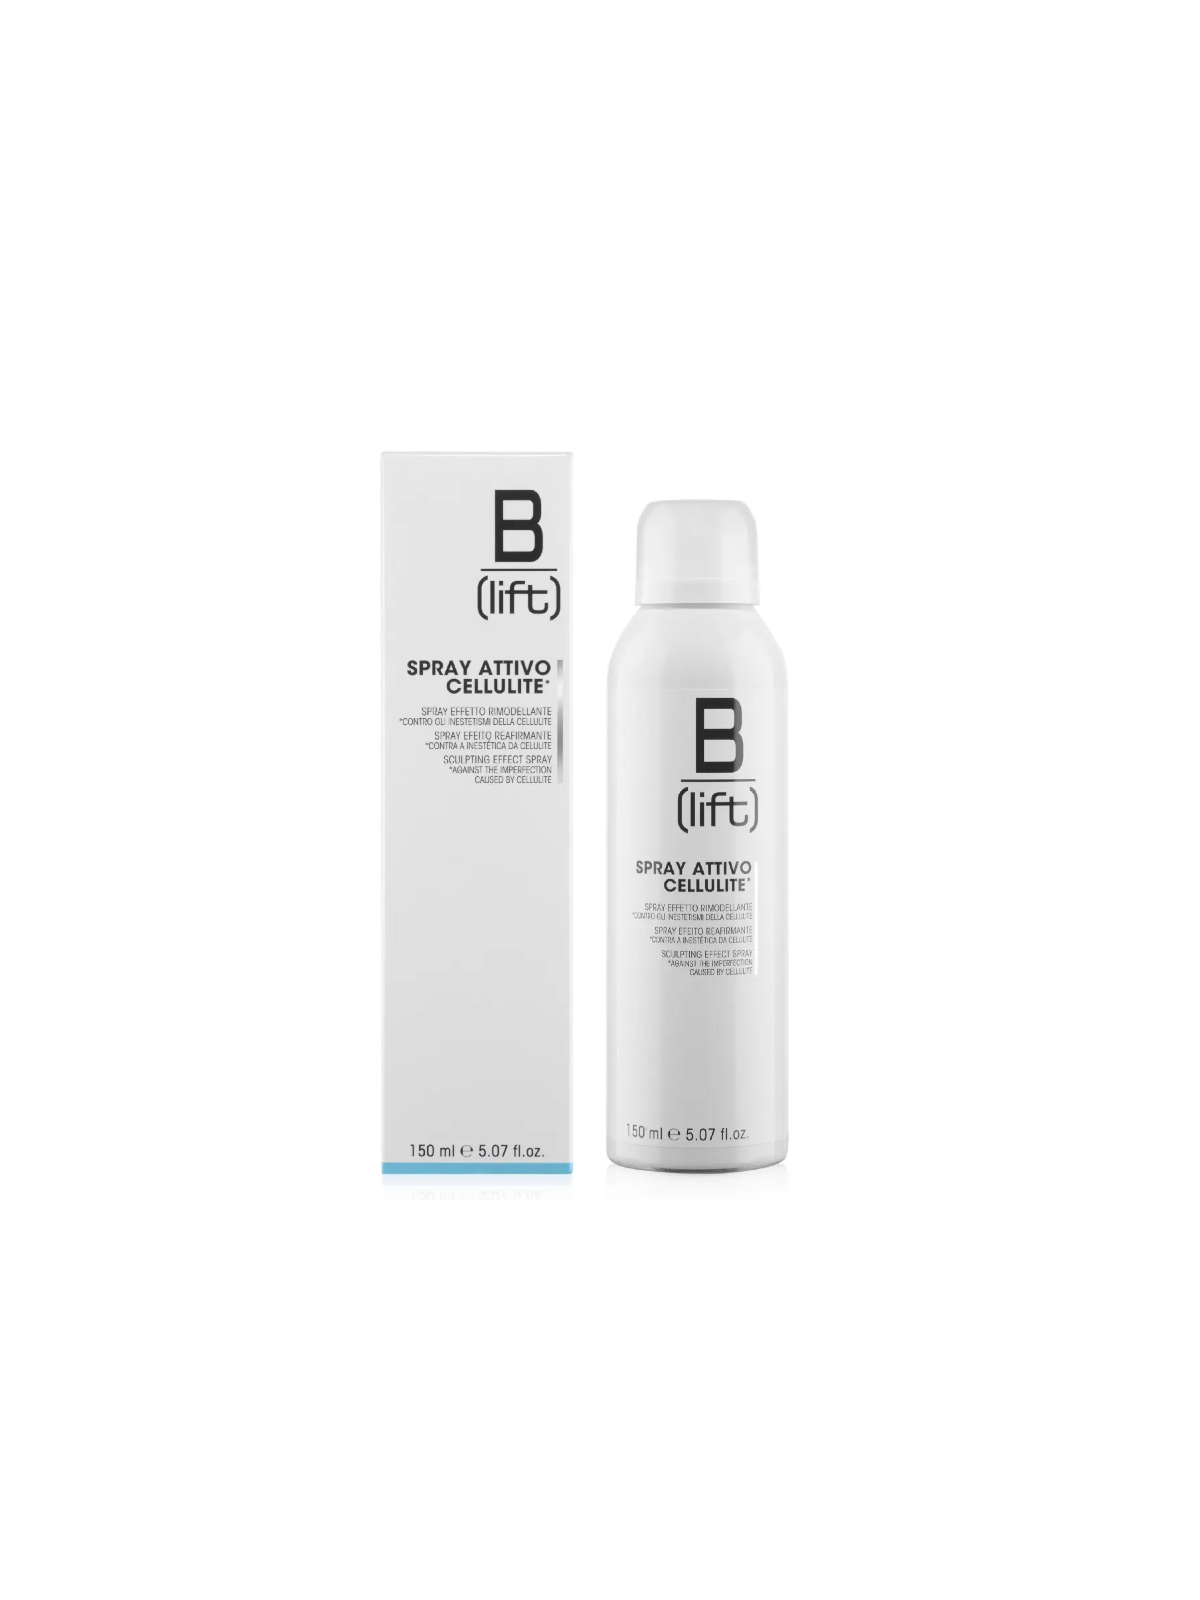 B-lift Spray Attivo Cellulite Effetto Rimodellante Syrio 150 ml